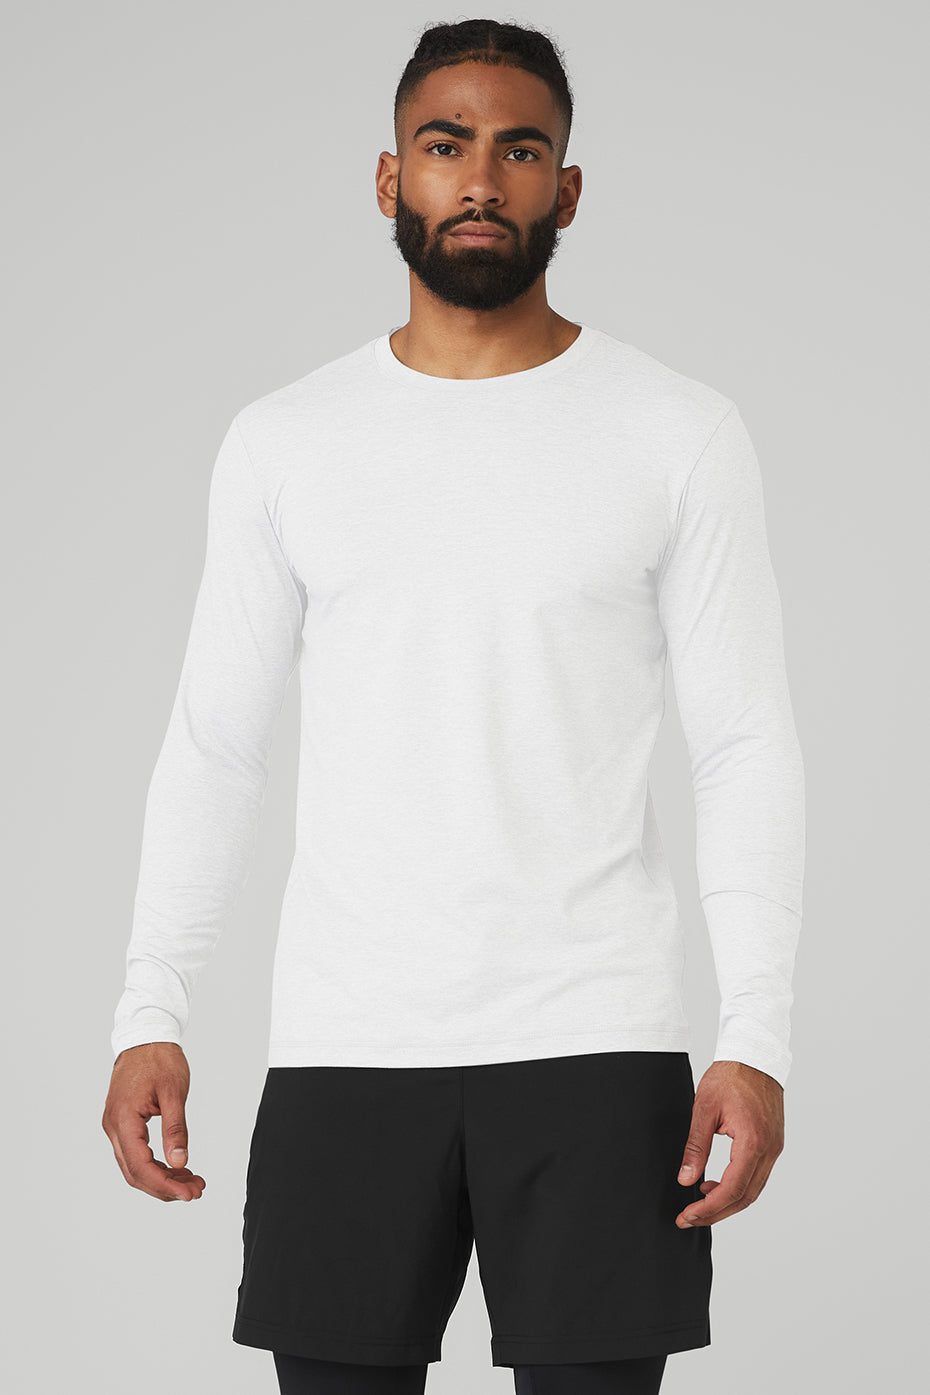 Longsleeve White T-Shirt for Men